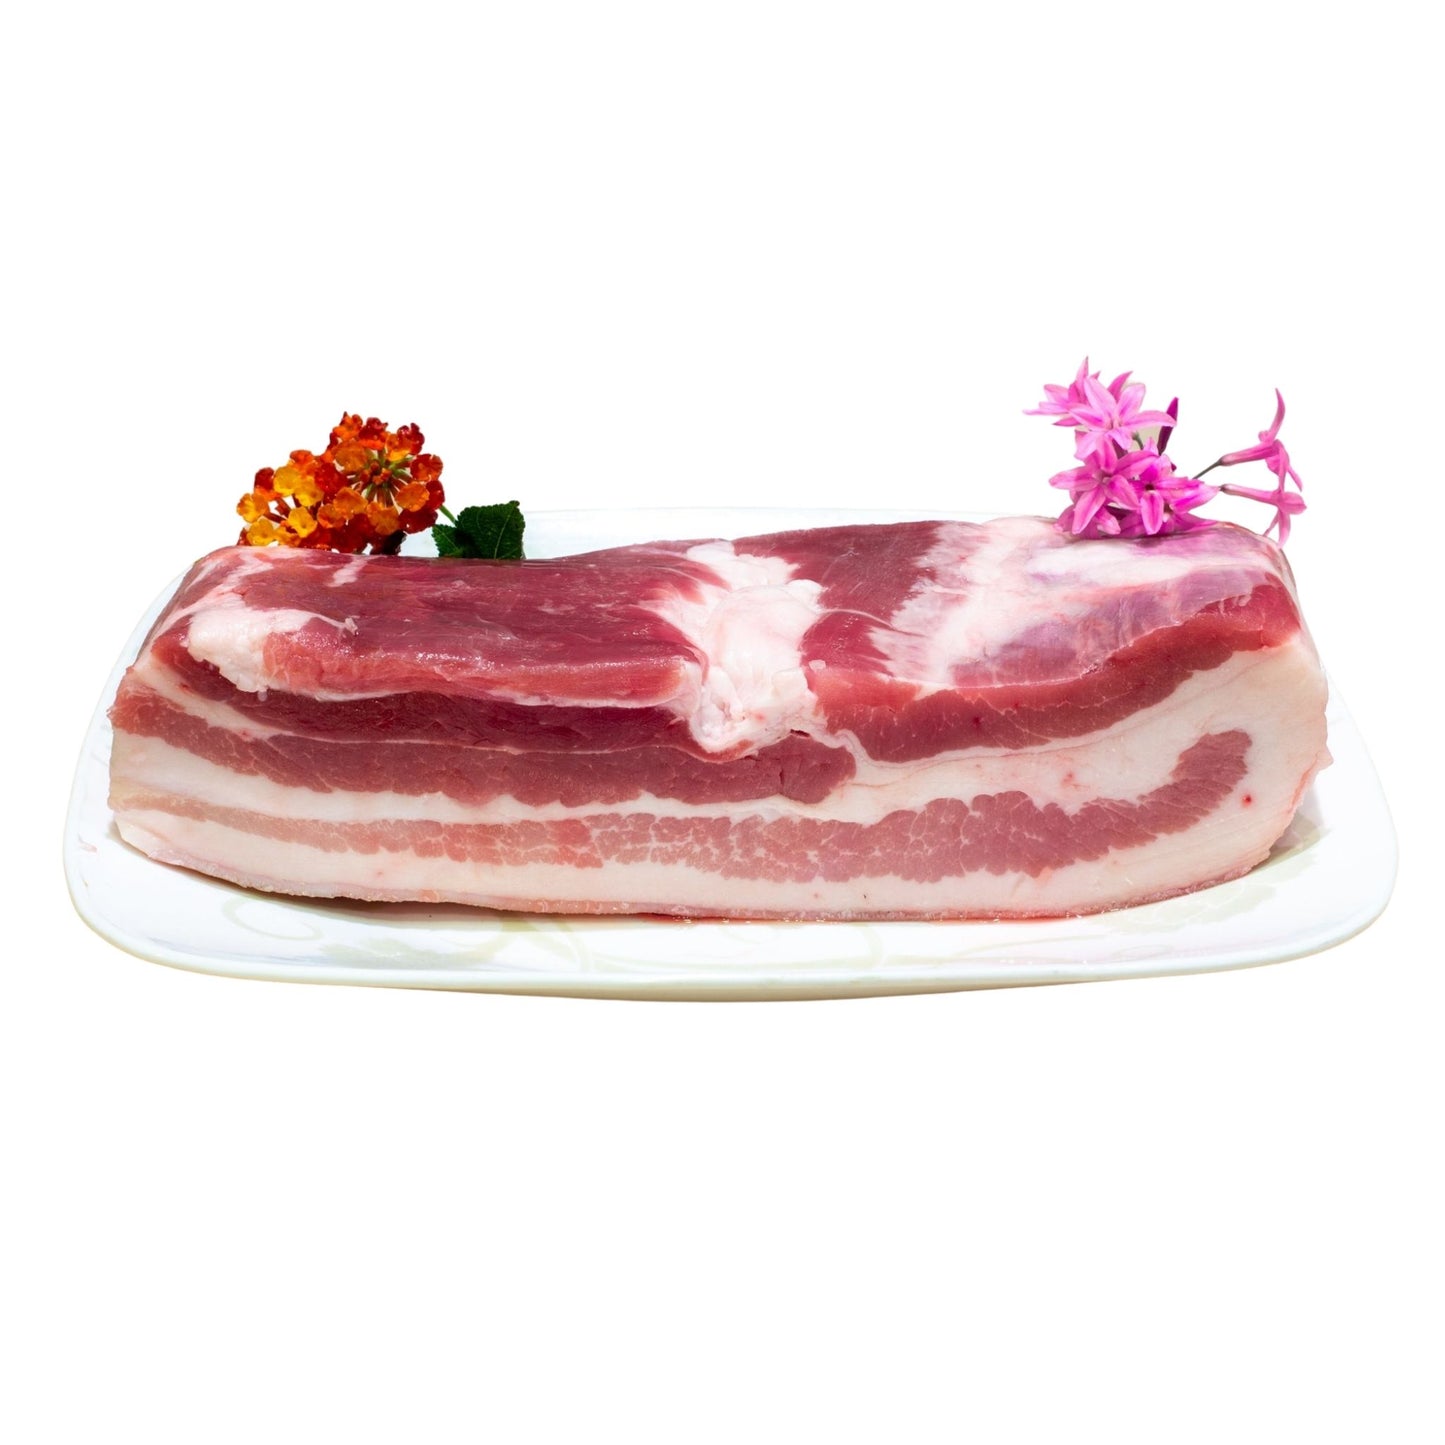 Skinless Pork Belly 去皮五花肉 (2.5-3 LB)